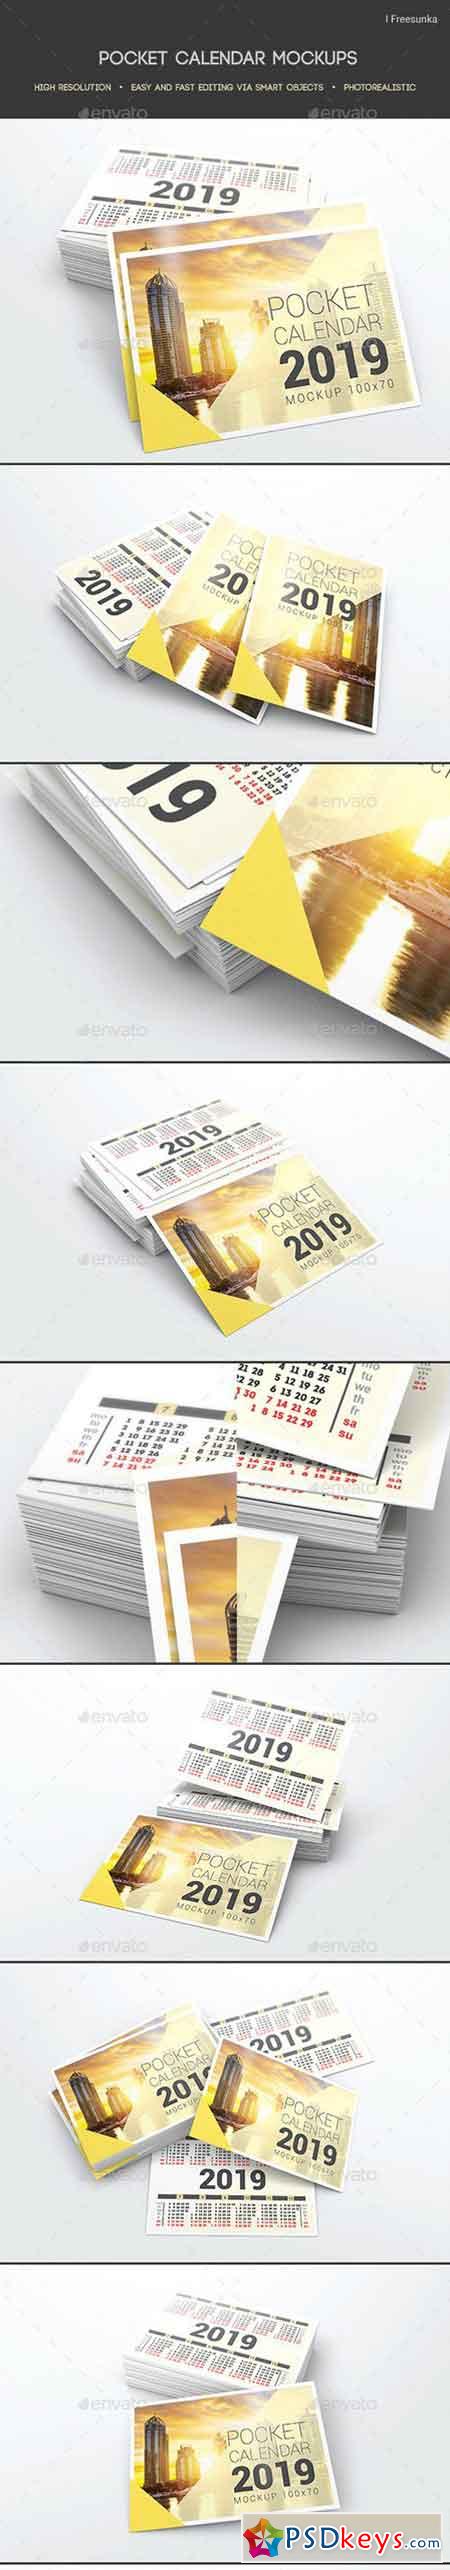 Pocket Calendar Mockups 22258582